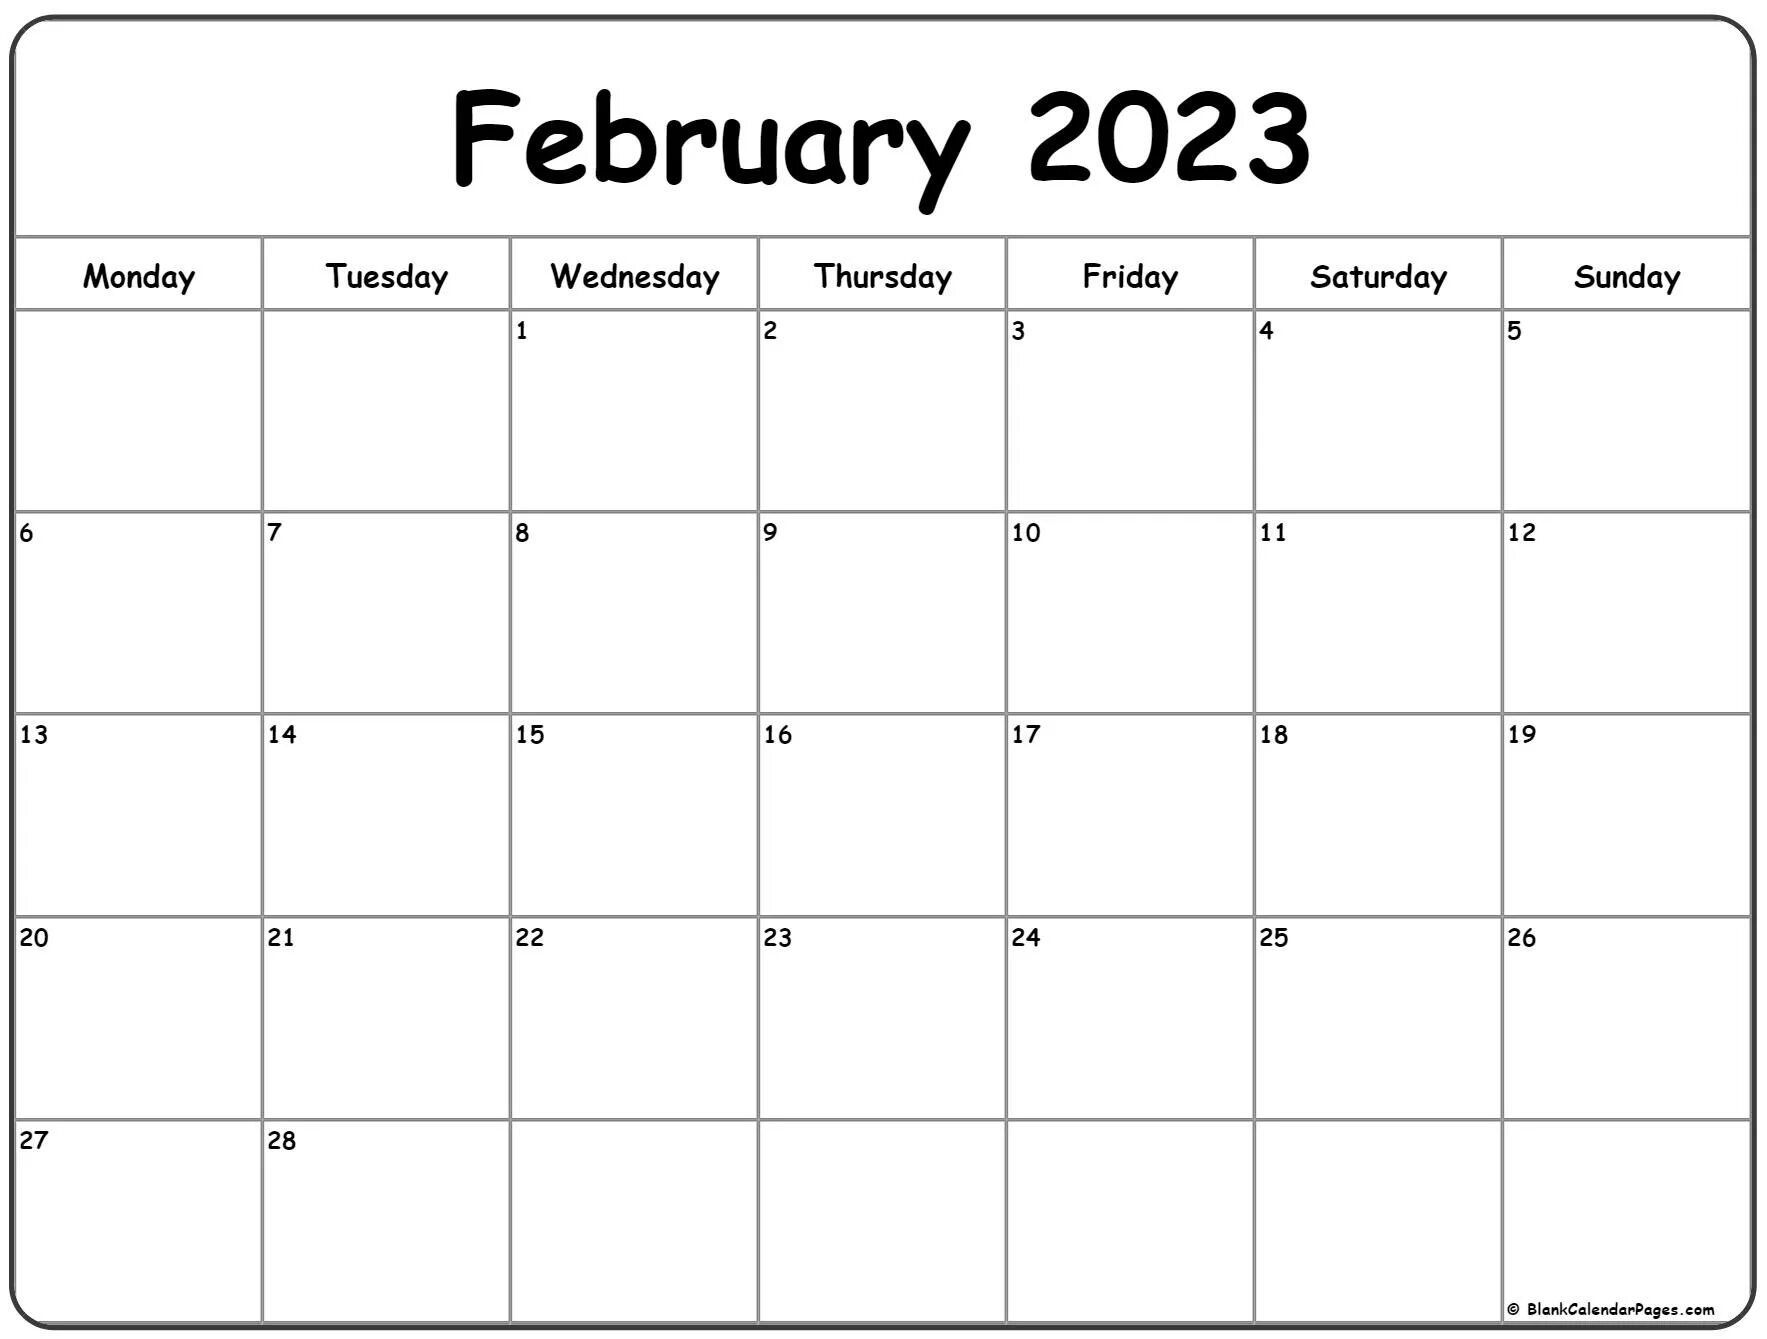 5 октябрь 2021. Календарь октябрь 2021. Планер на декабрь 2022. Понедельник календарь. Планер на октябрь 2022.